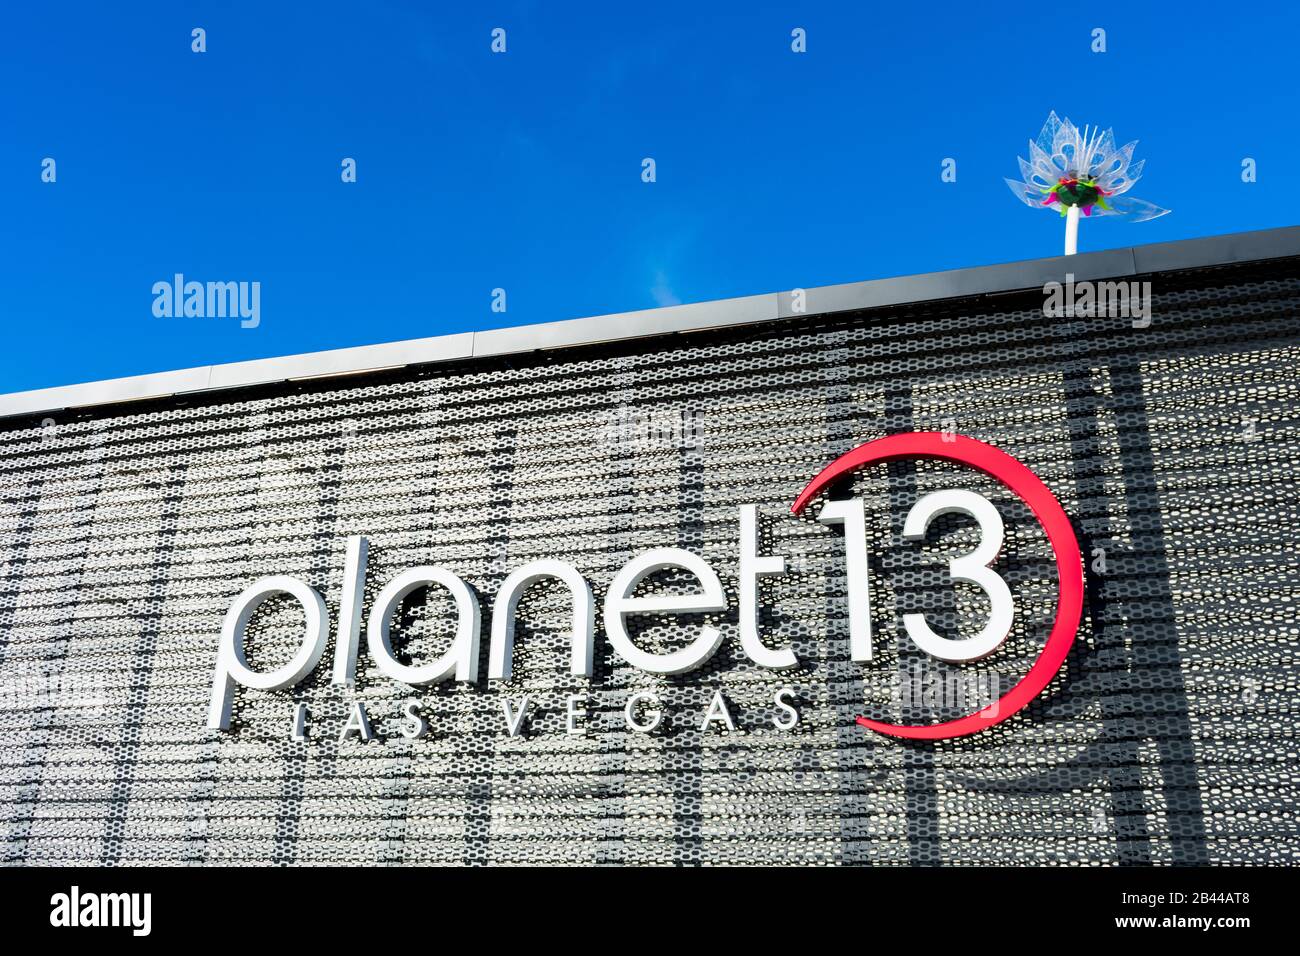 Planet 13-Zeichen auf dem größten Cannabisspender der Welt, in dem Marihuana zum Freizeit- oder medizinischen Gebrauch verkauft wird. Das Geschäft wird von der Planet 13 Holding betrieben Stockfoto